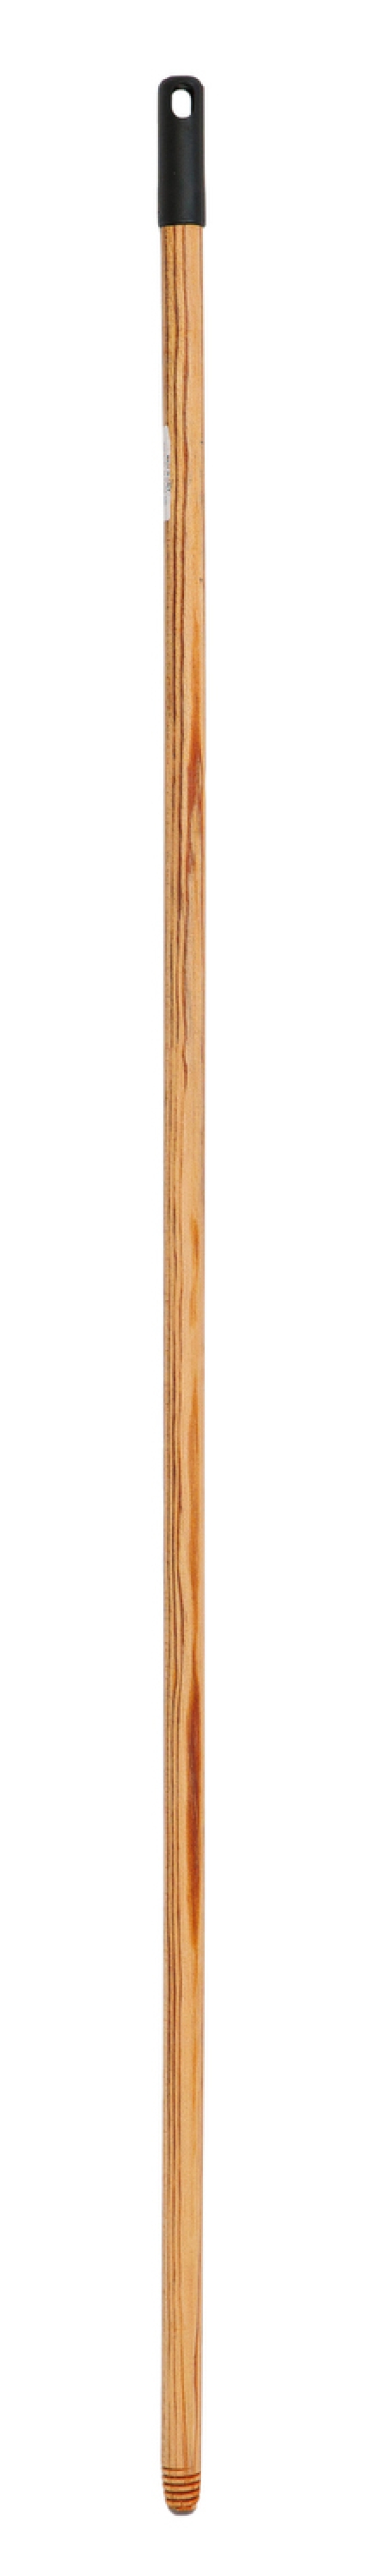 Manico legno 130 cm con appendino